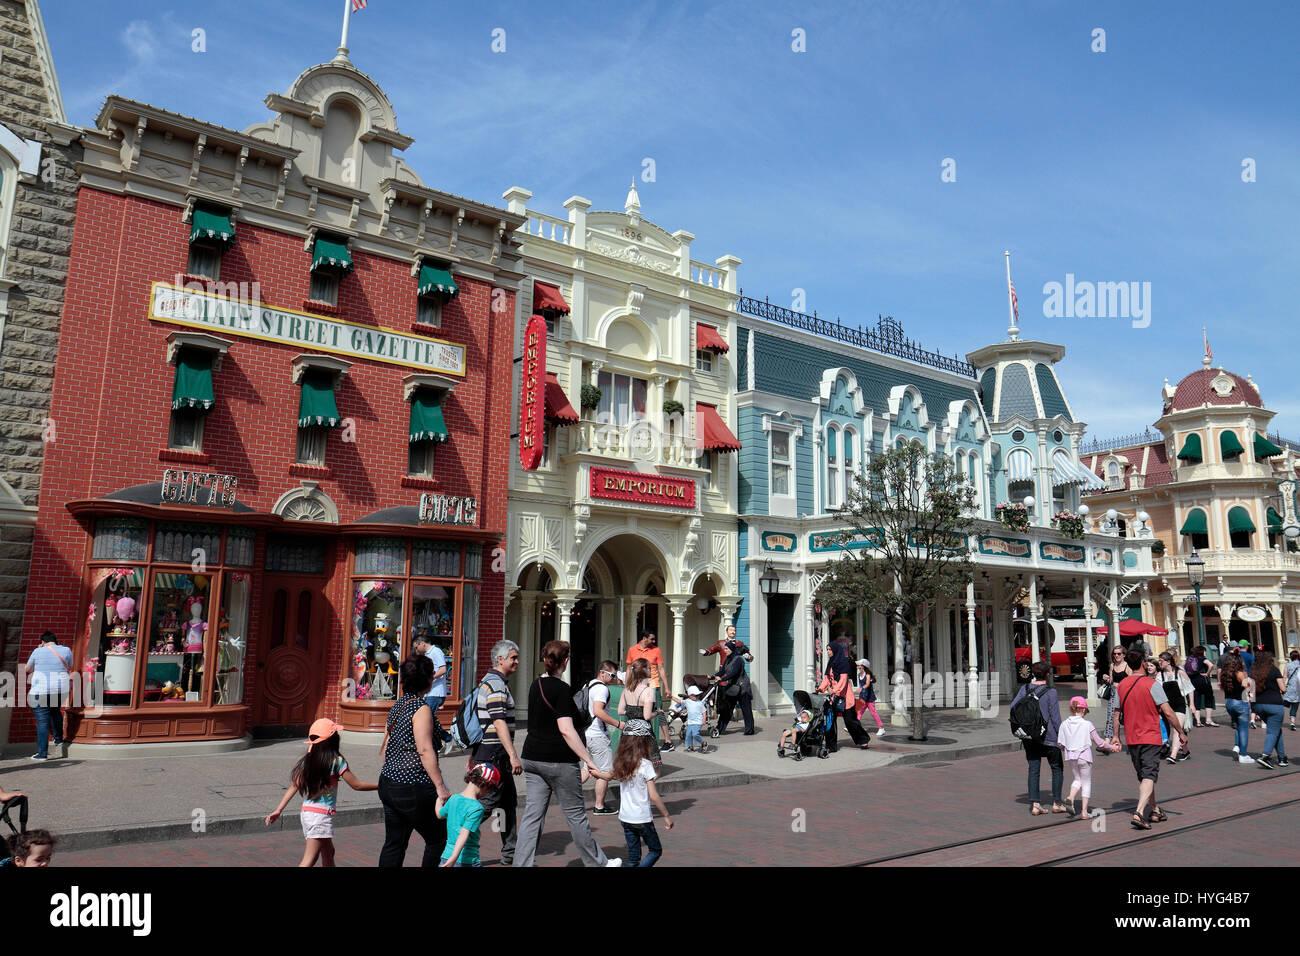 Main Street, Disneyland Paris, Marne-la-Vallée, près de Paris, France. Banque D'Images